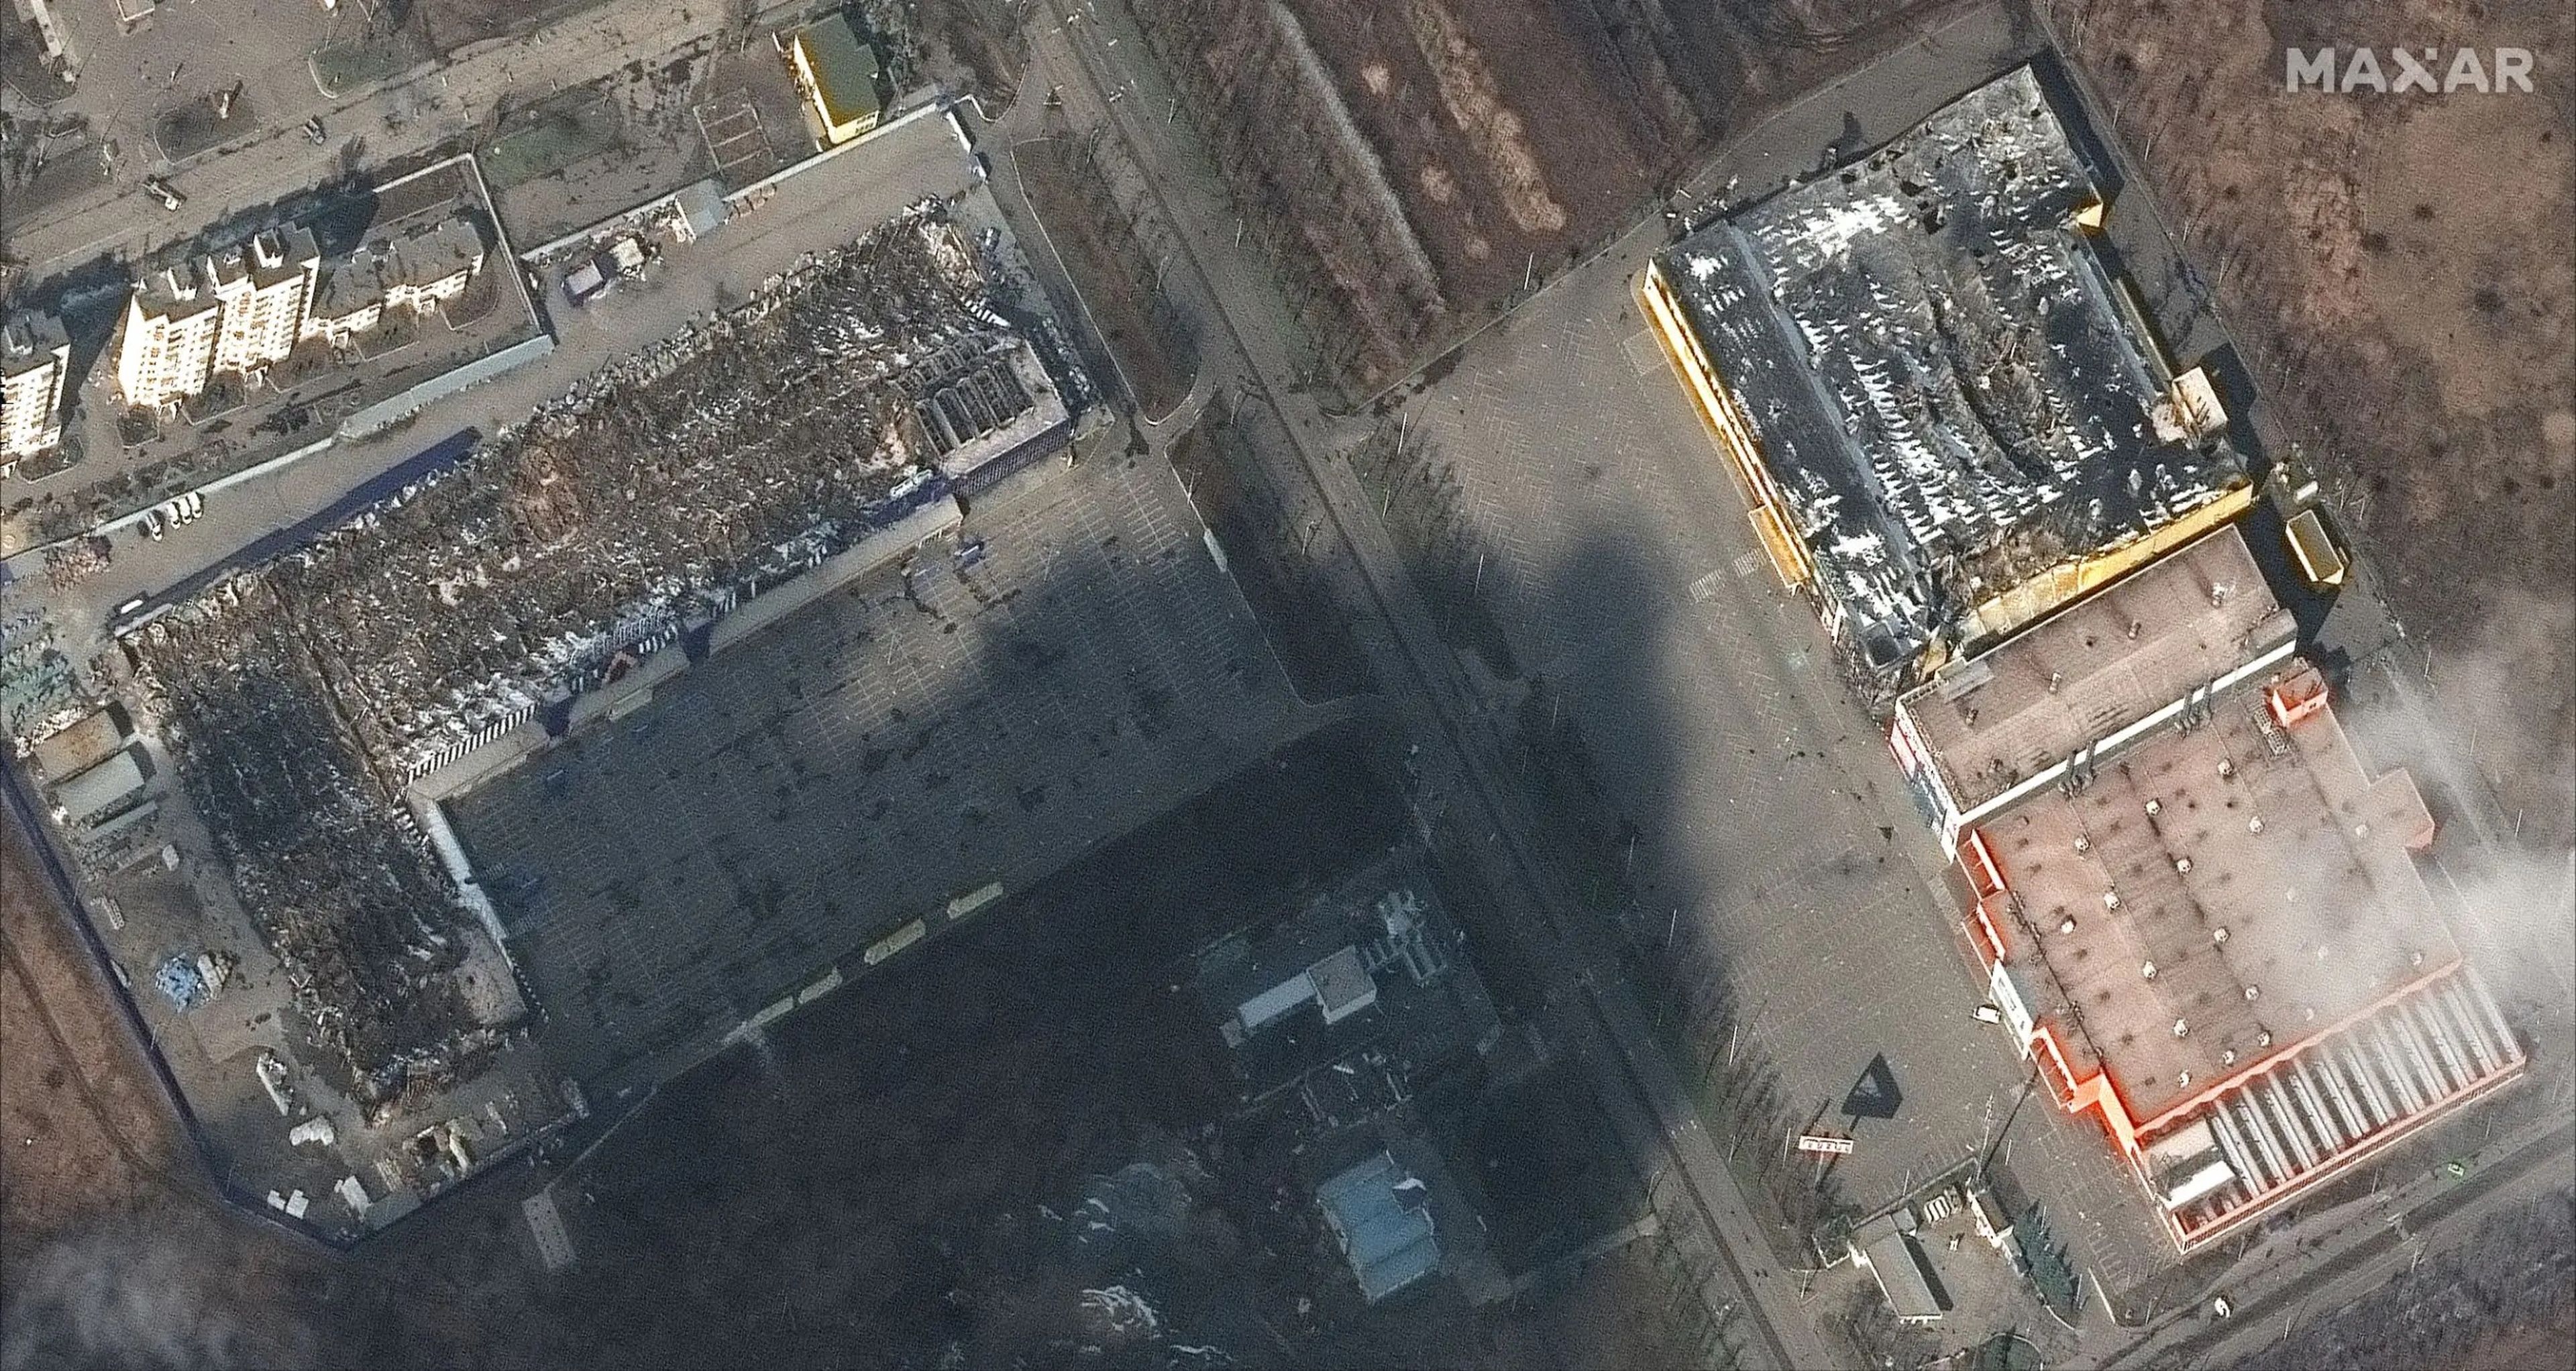 Imagen satelital de supermercados y centros comerciales destruidos tras la invasión en el oeste de Mariupol, Ucrania, 9 de marzo de 2022.